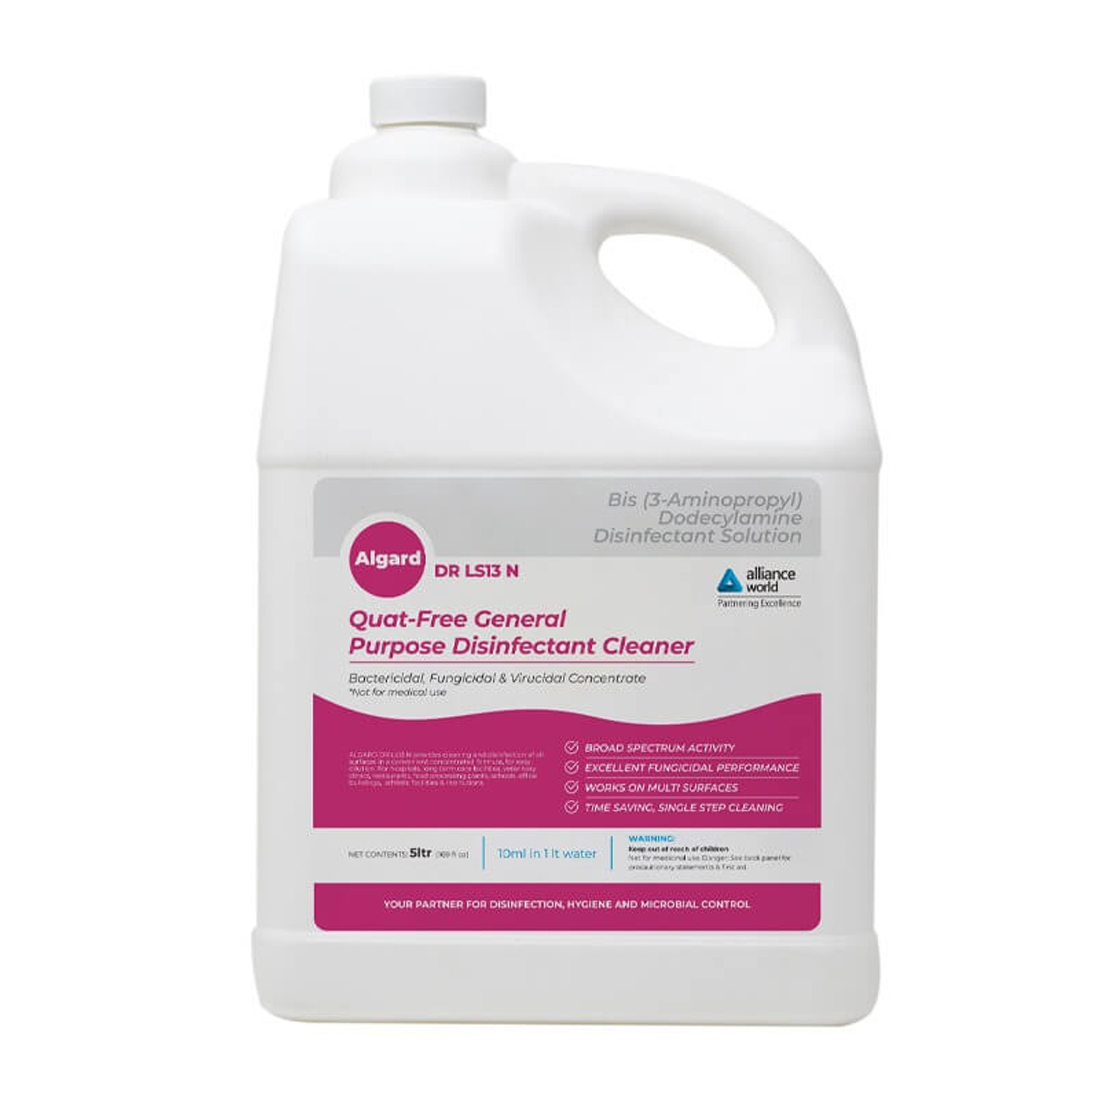 Algard DR LS13 N – Quat-Free General Purpose Disinfectant